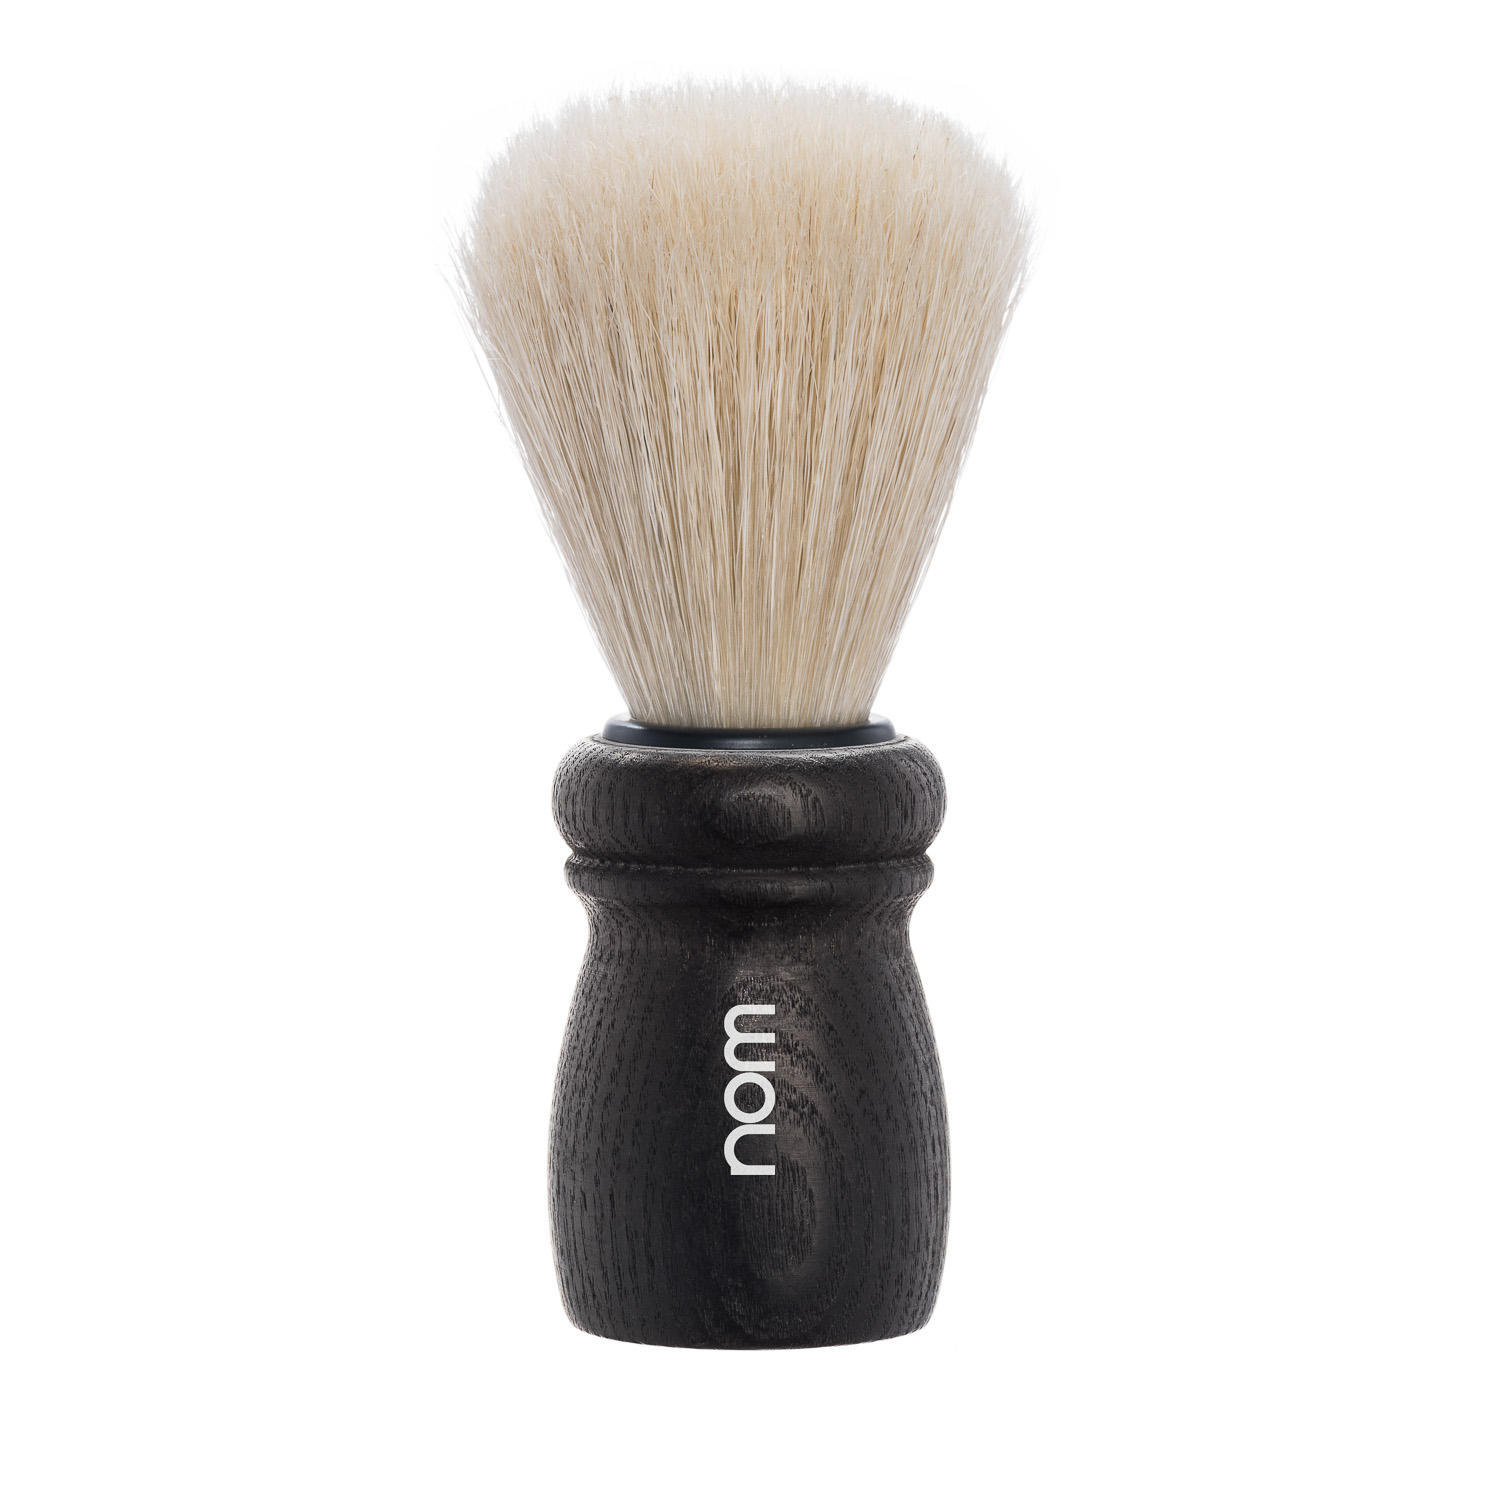 ALFRED15BA nom ALFRED, Black Ash, Long Natural Bristle Shaving Brush